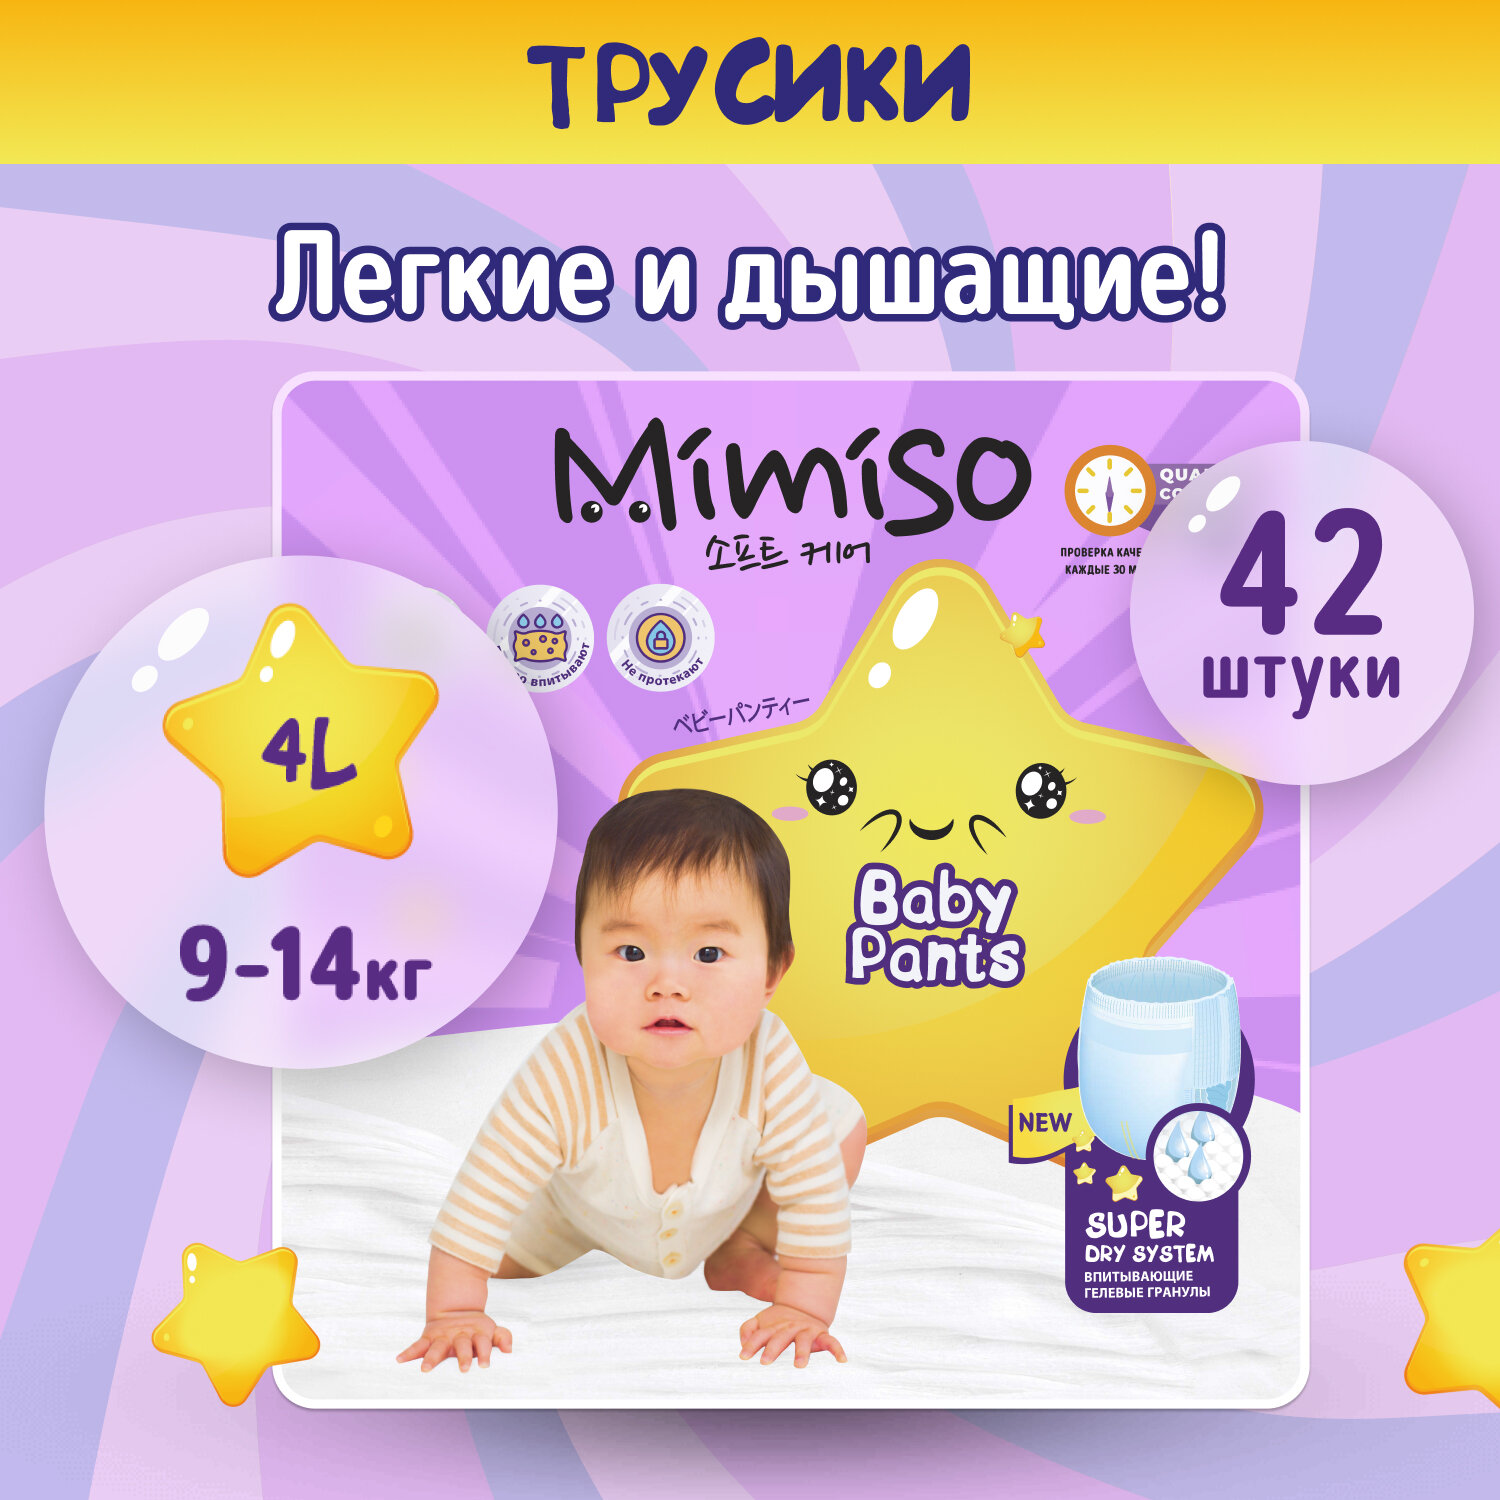 MIMISO Трусики одноразовые для детей 4/L 9-14 кг 42шт